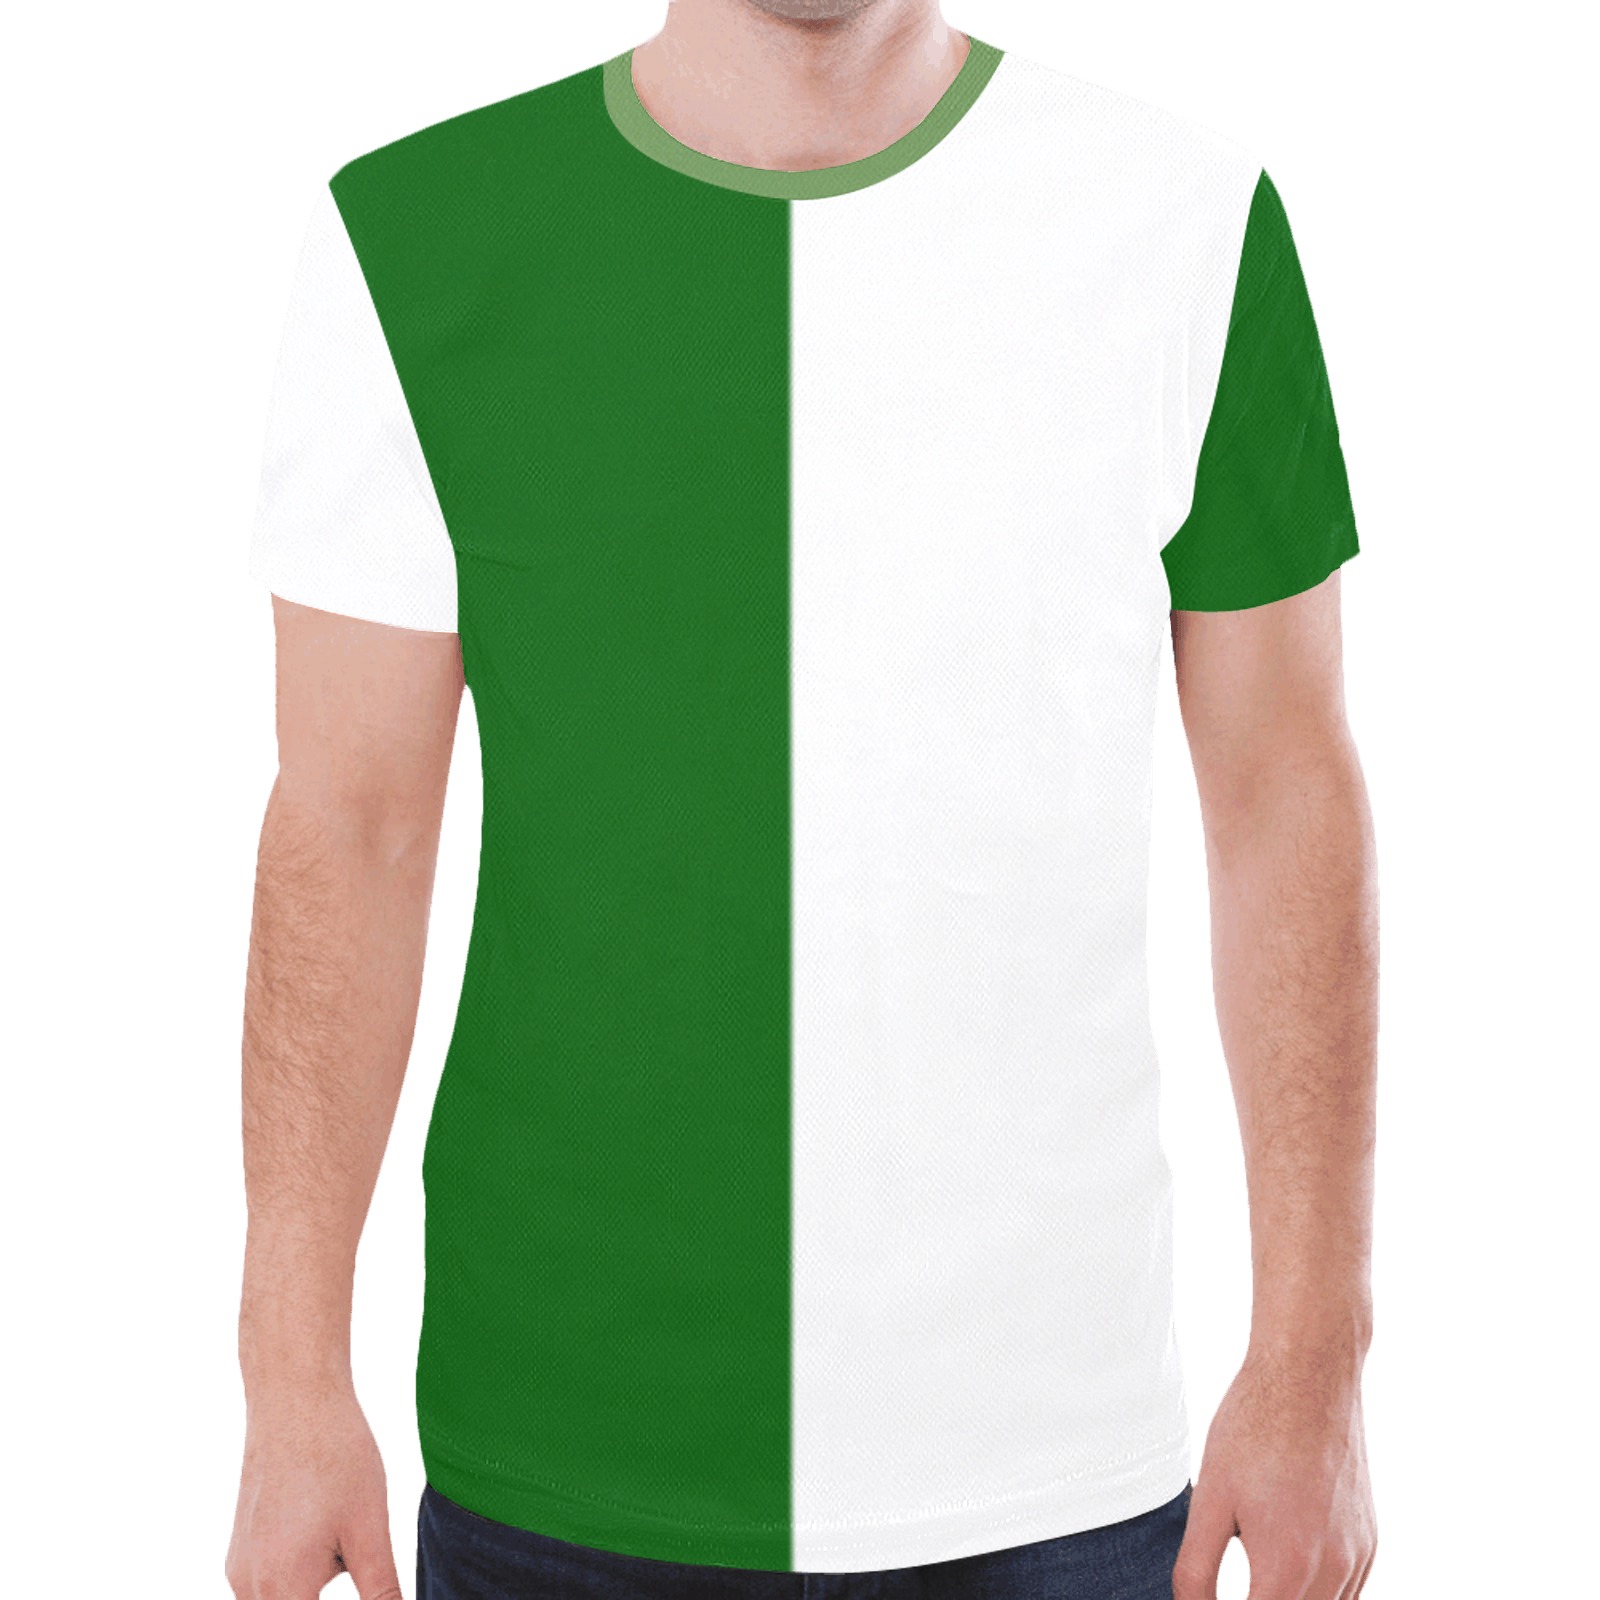 dkgreenwhitehalf2 New All Over Print T-shirt for Men (Model T45)